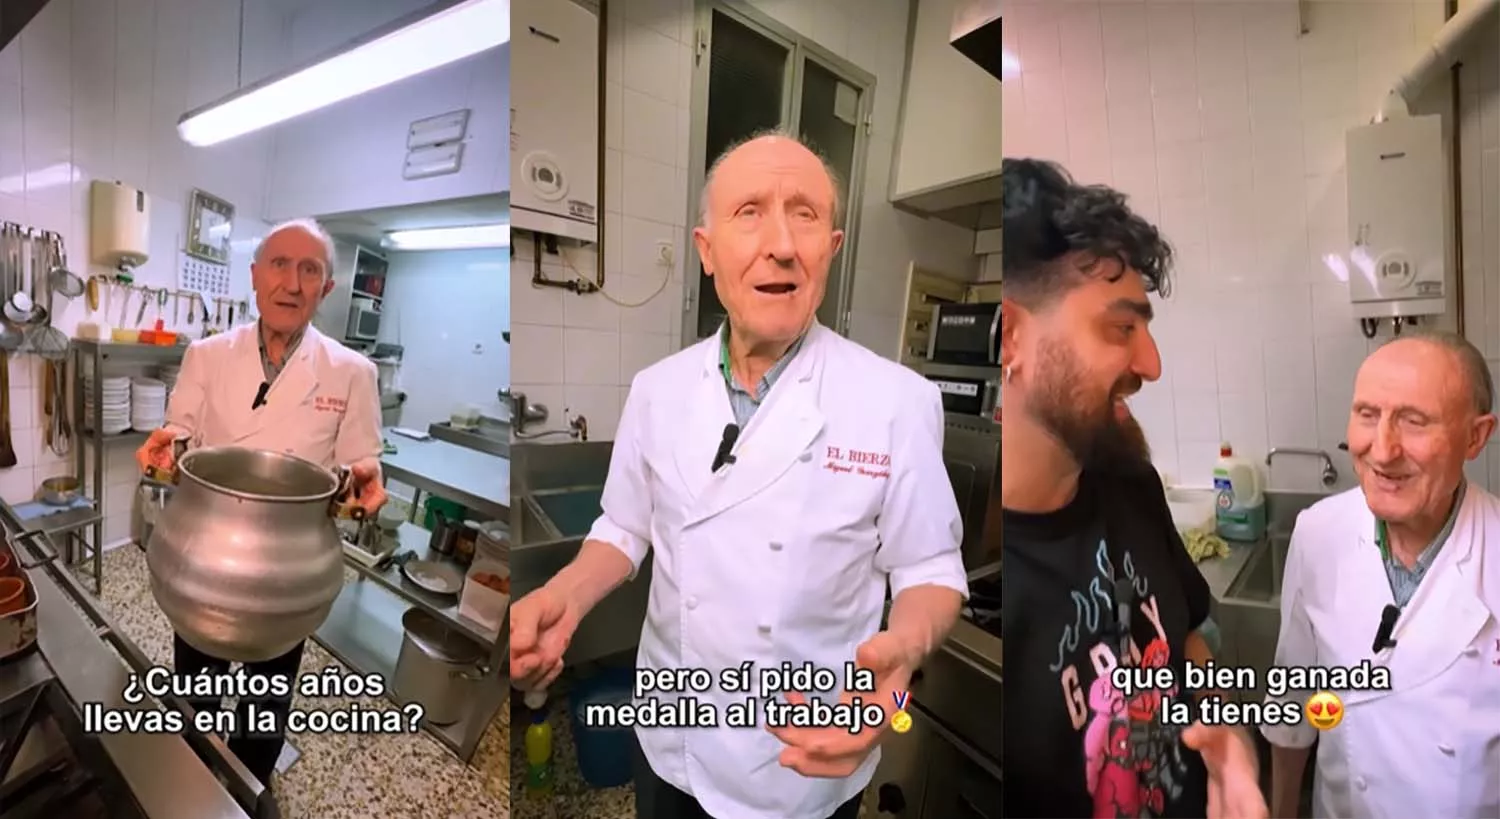 El restaurante El Bierzo regentado por el chef más longevo de Madrid salta a las redes de 'De tapas con Rufo' con una petición